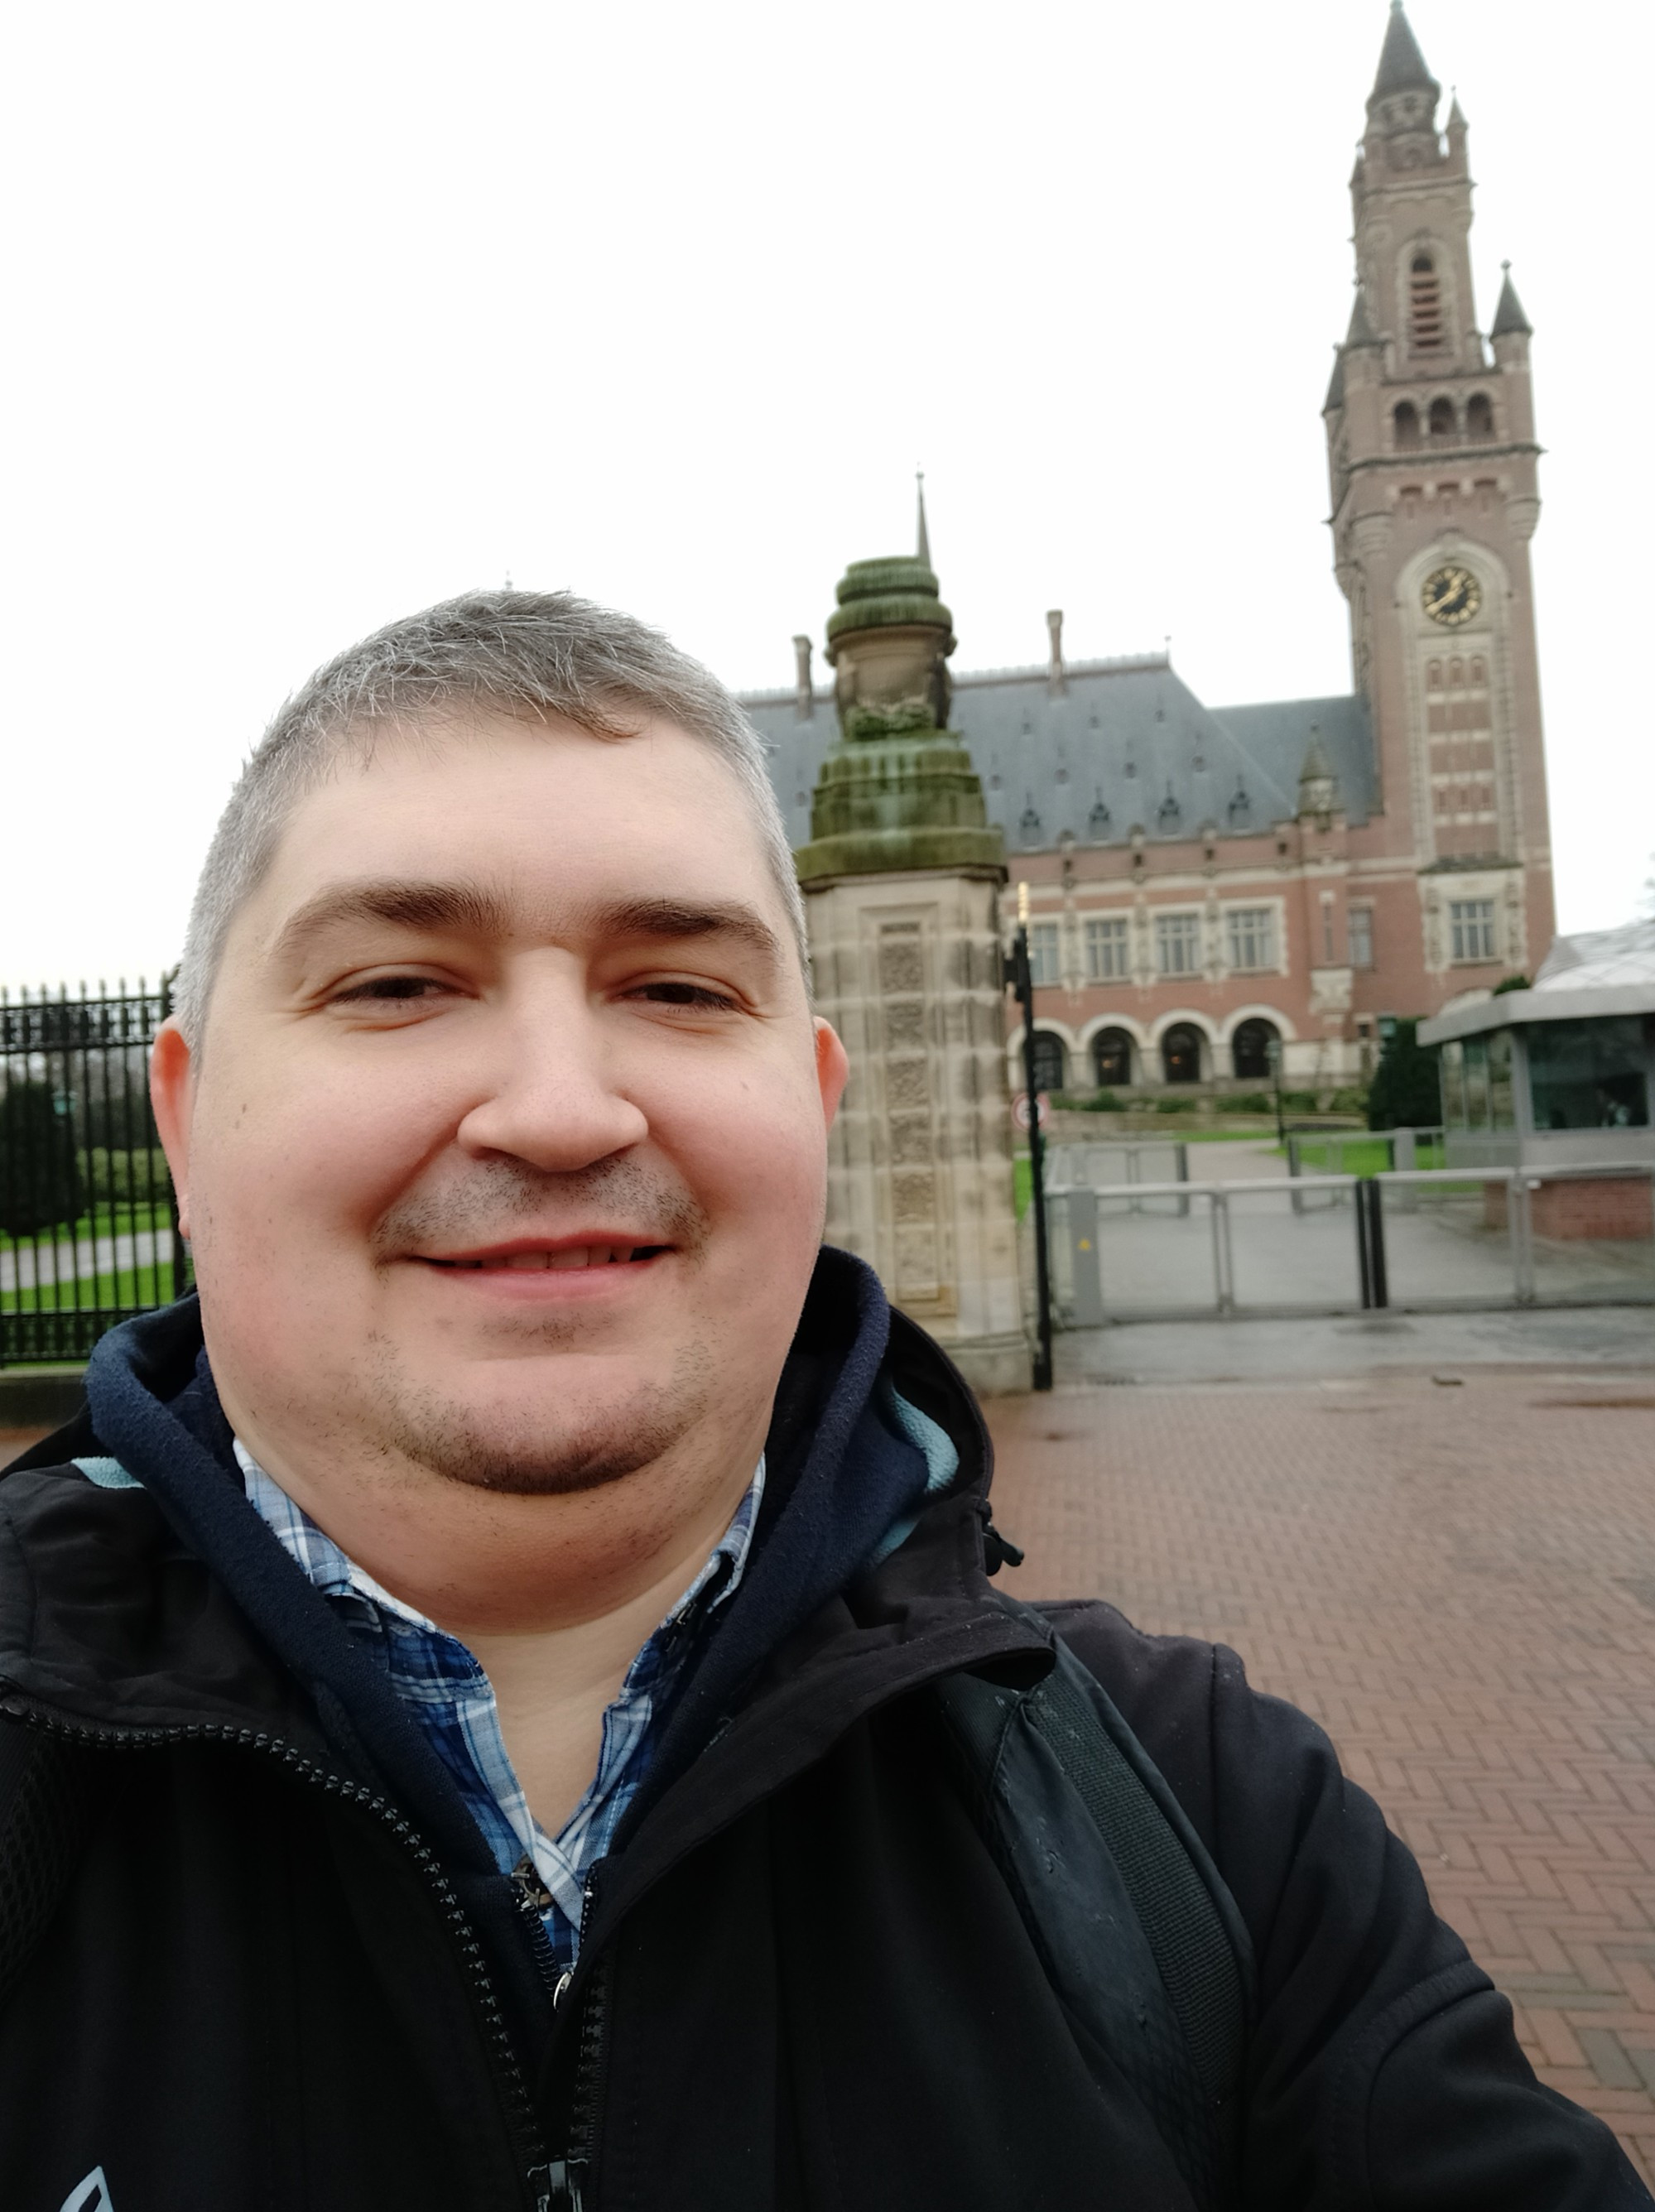 Гаага. Я на фоне Дворца Мира. (16.03.2019)